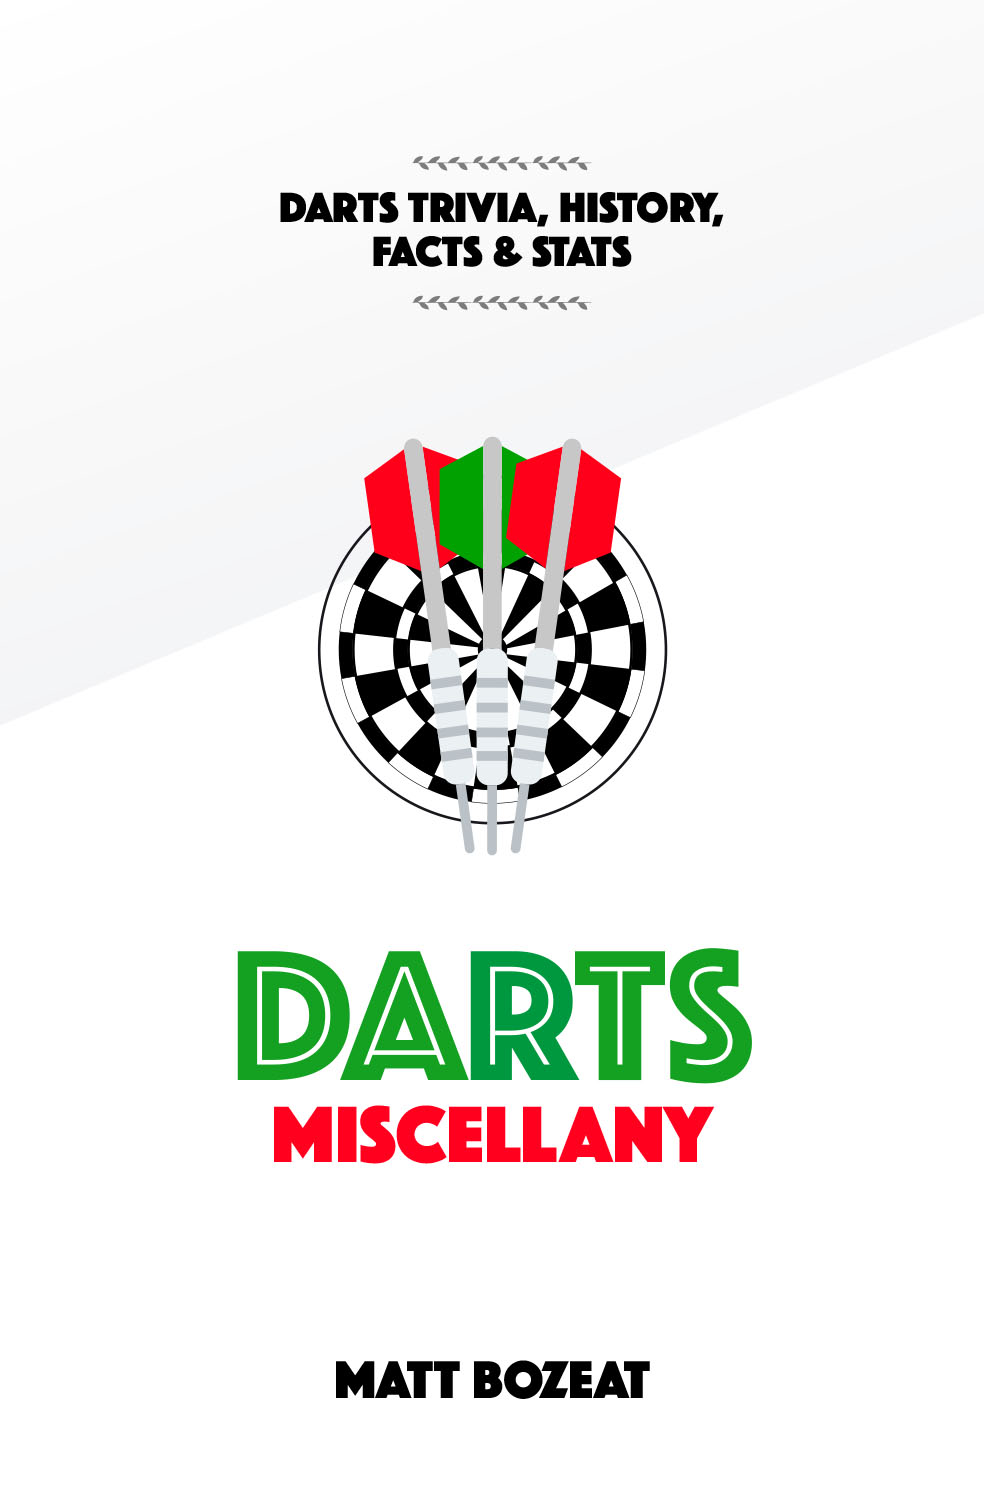 Darts Miscellany